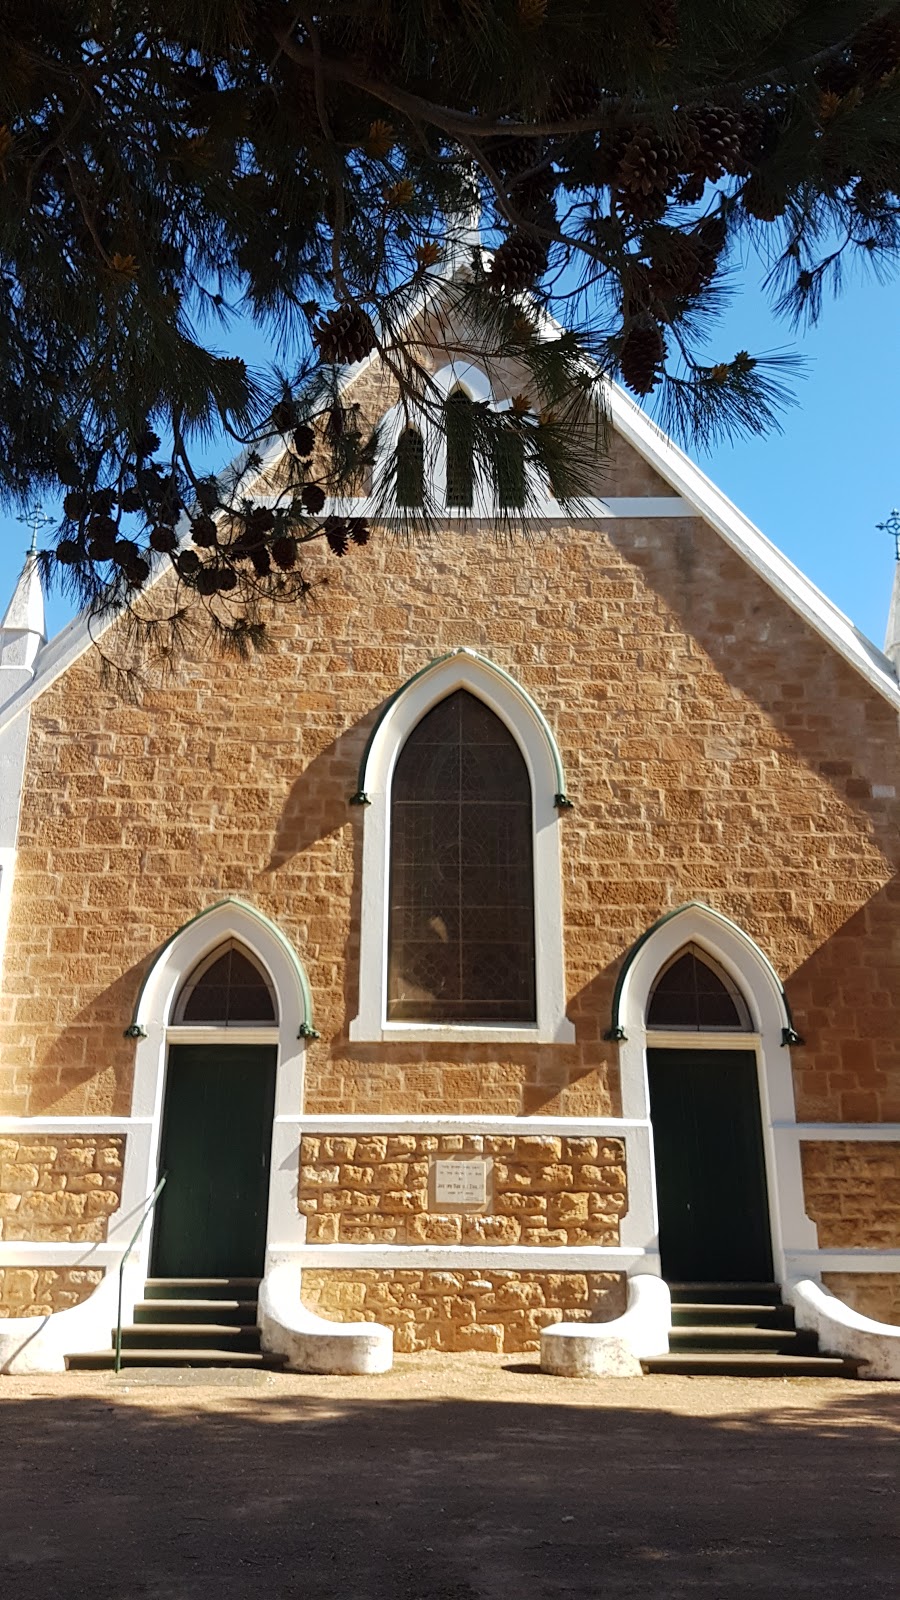 Snowtown Uniting Church | 17 Railway Terrace W, Snowtown SA 5520, Australia